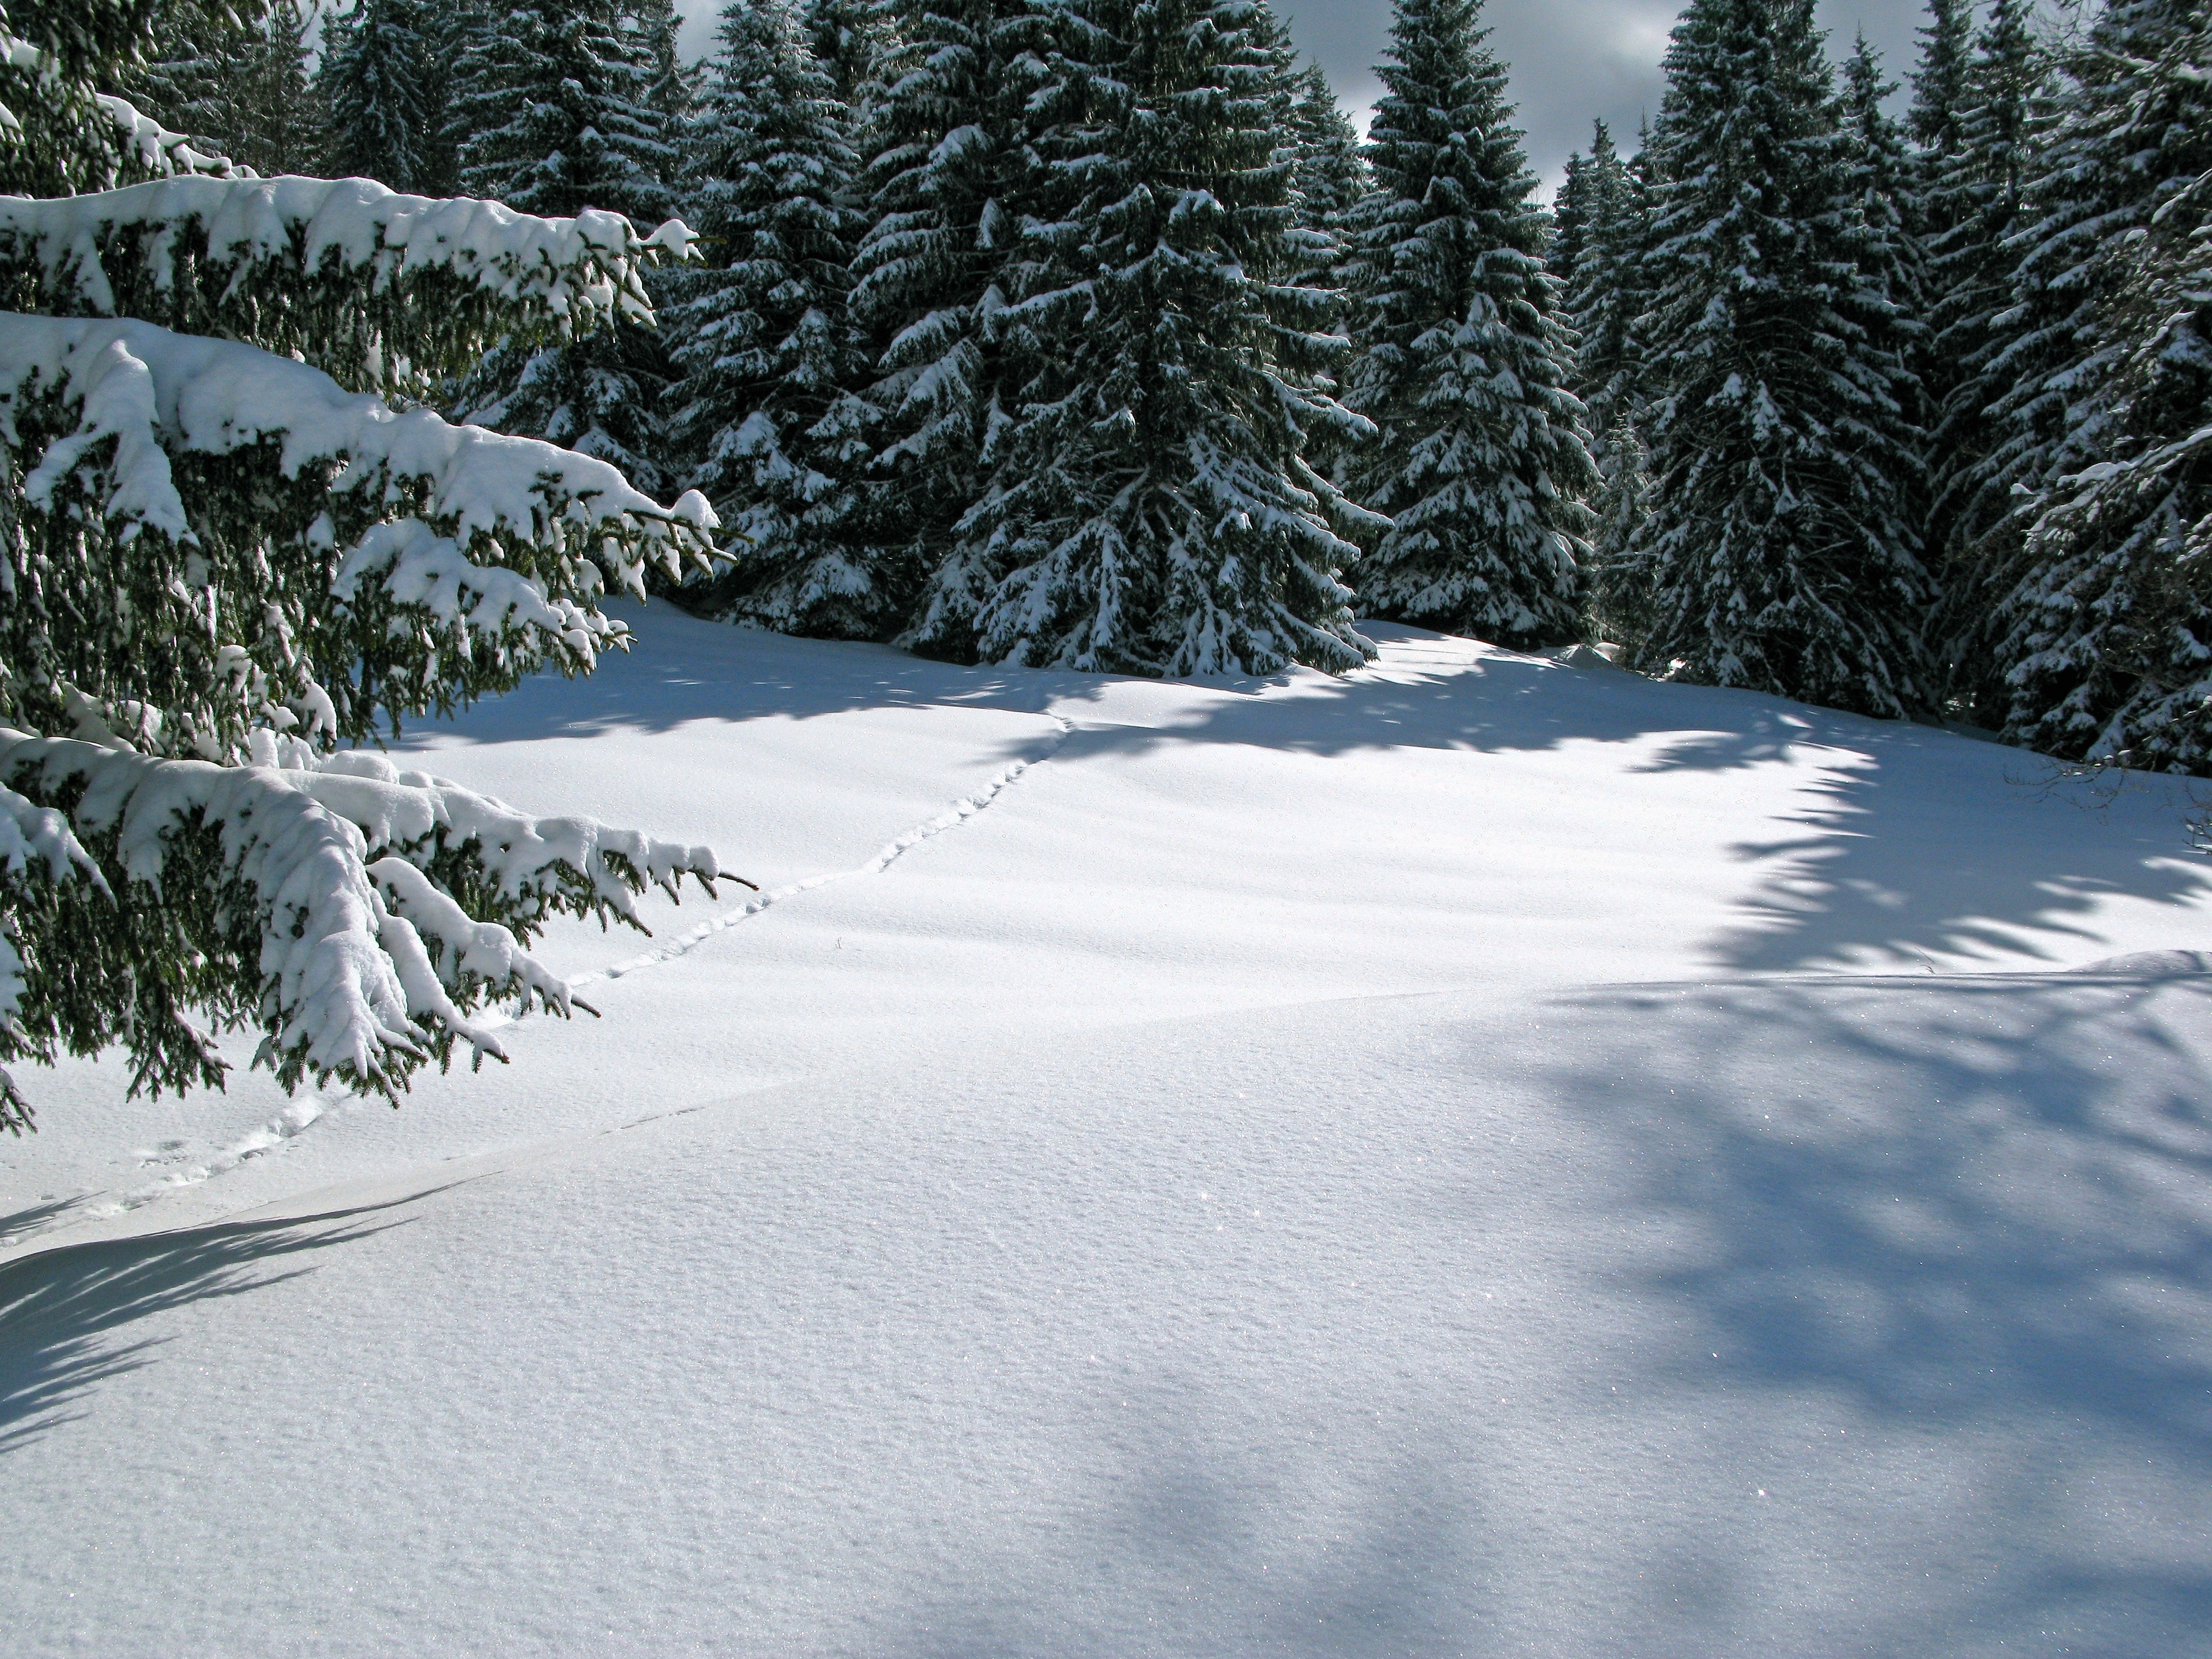 Природа снег и лед. Снег. Снег и лед в природе. Зимой в лесу. Зимний снег.